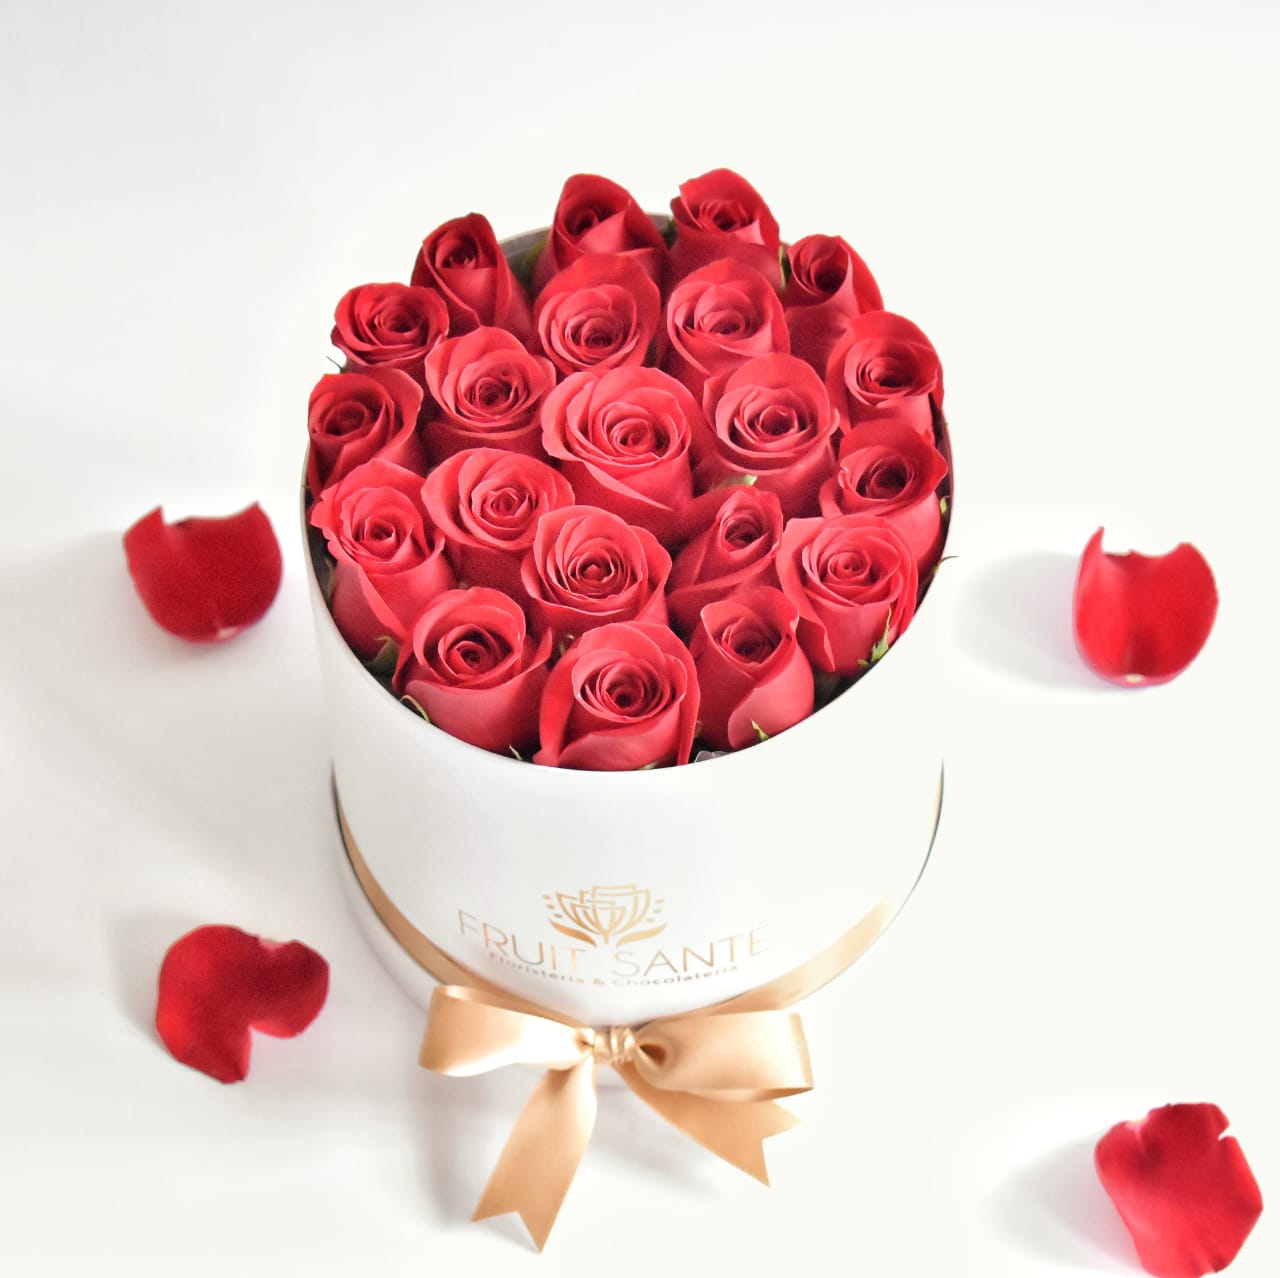 ? Caja Cilindrica de 20 Rosas Rojas (sueño imperial) - Fruit Santé - Rosas  Tipo Exportación